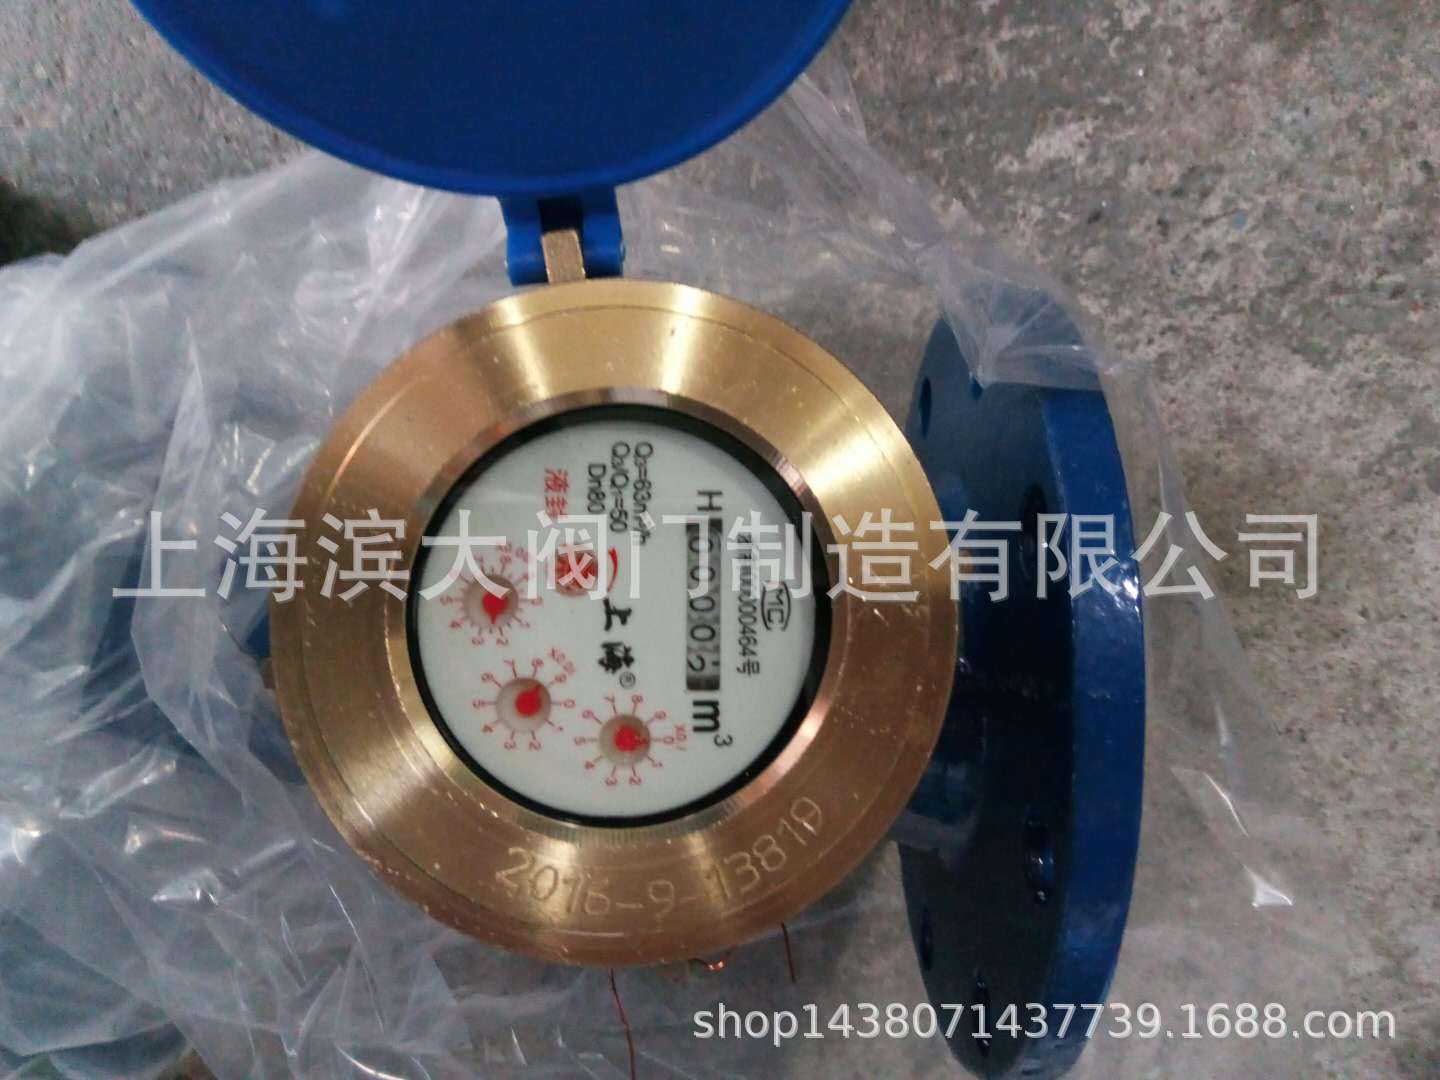 上海沪光五金厂 旋翼式水表LXS-80E水表沪光水表DN50-N150价格